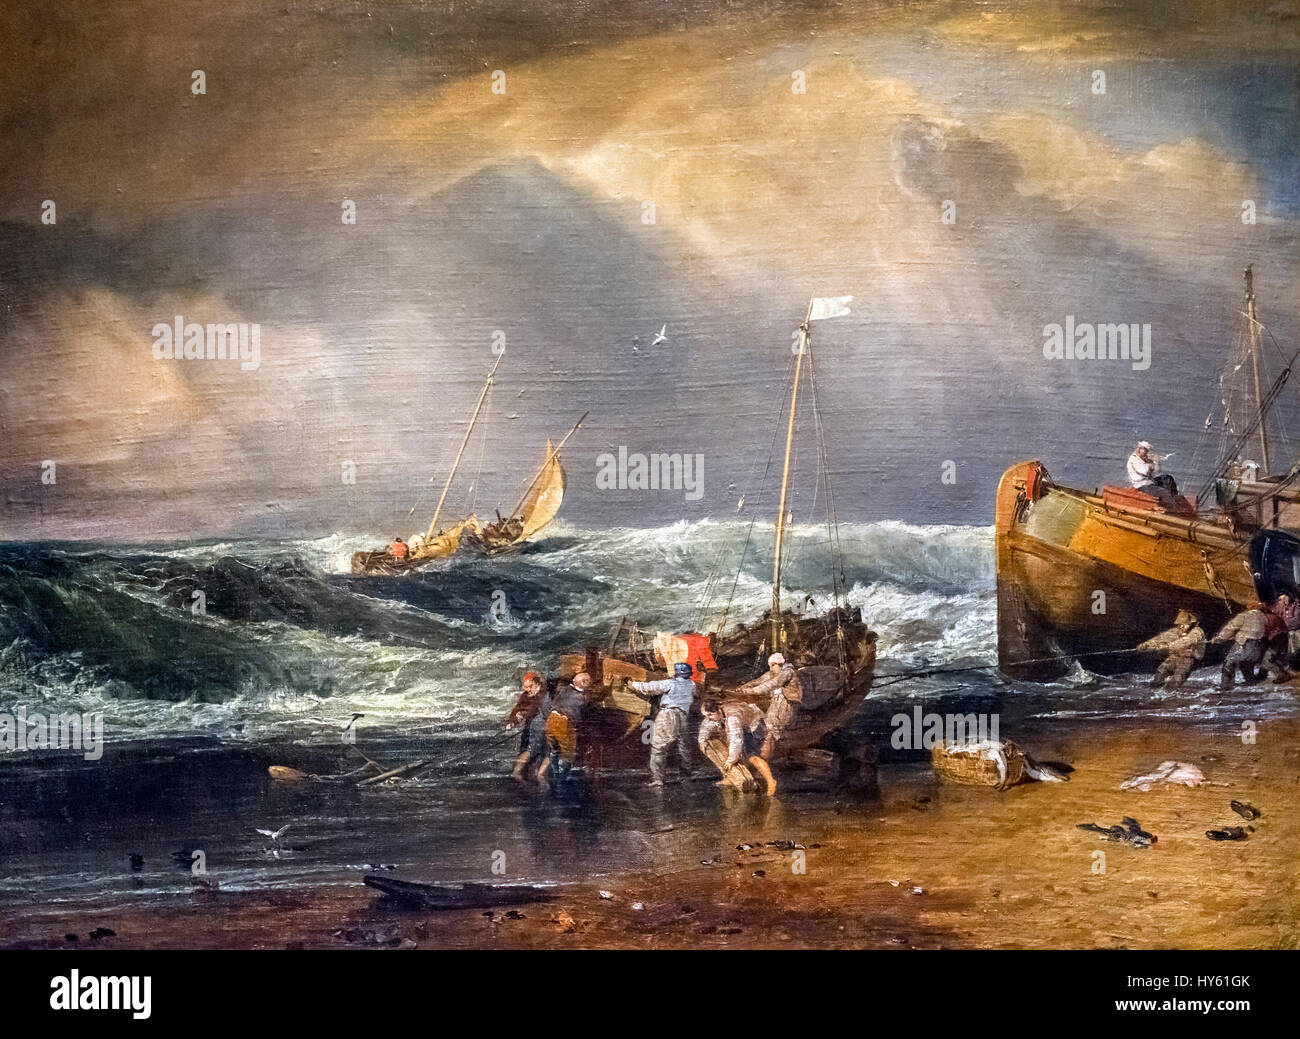 JMW Turner "Scène de la côte avec des pêcheurs", huile sur toile, c.1803 Banque D'Images